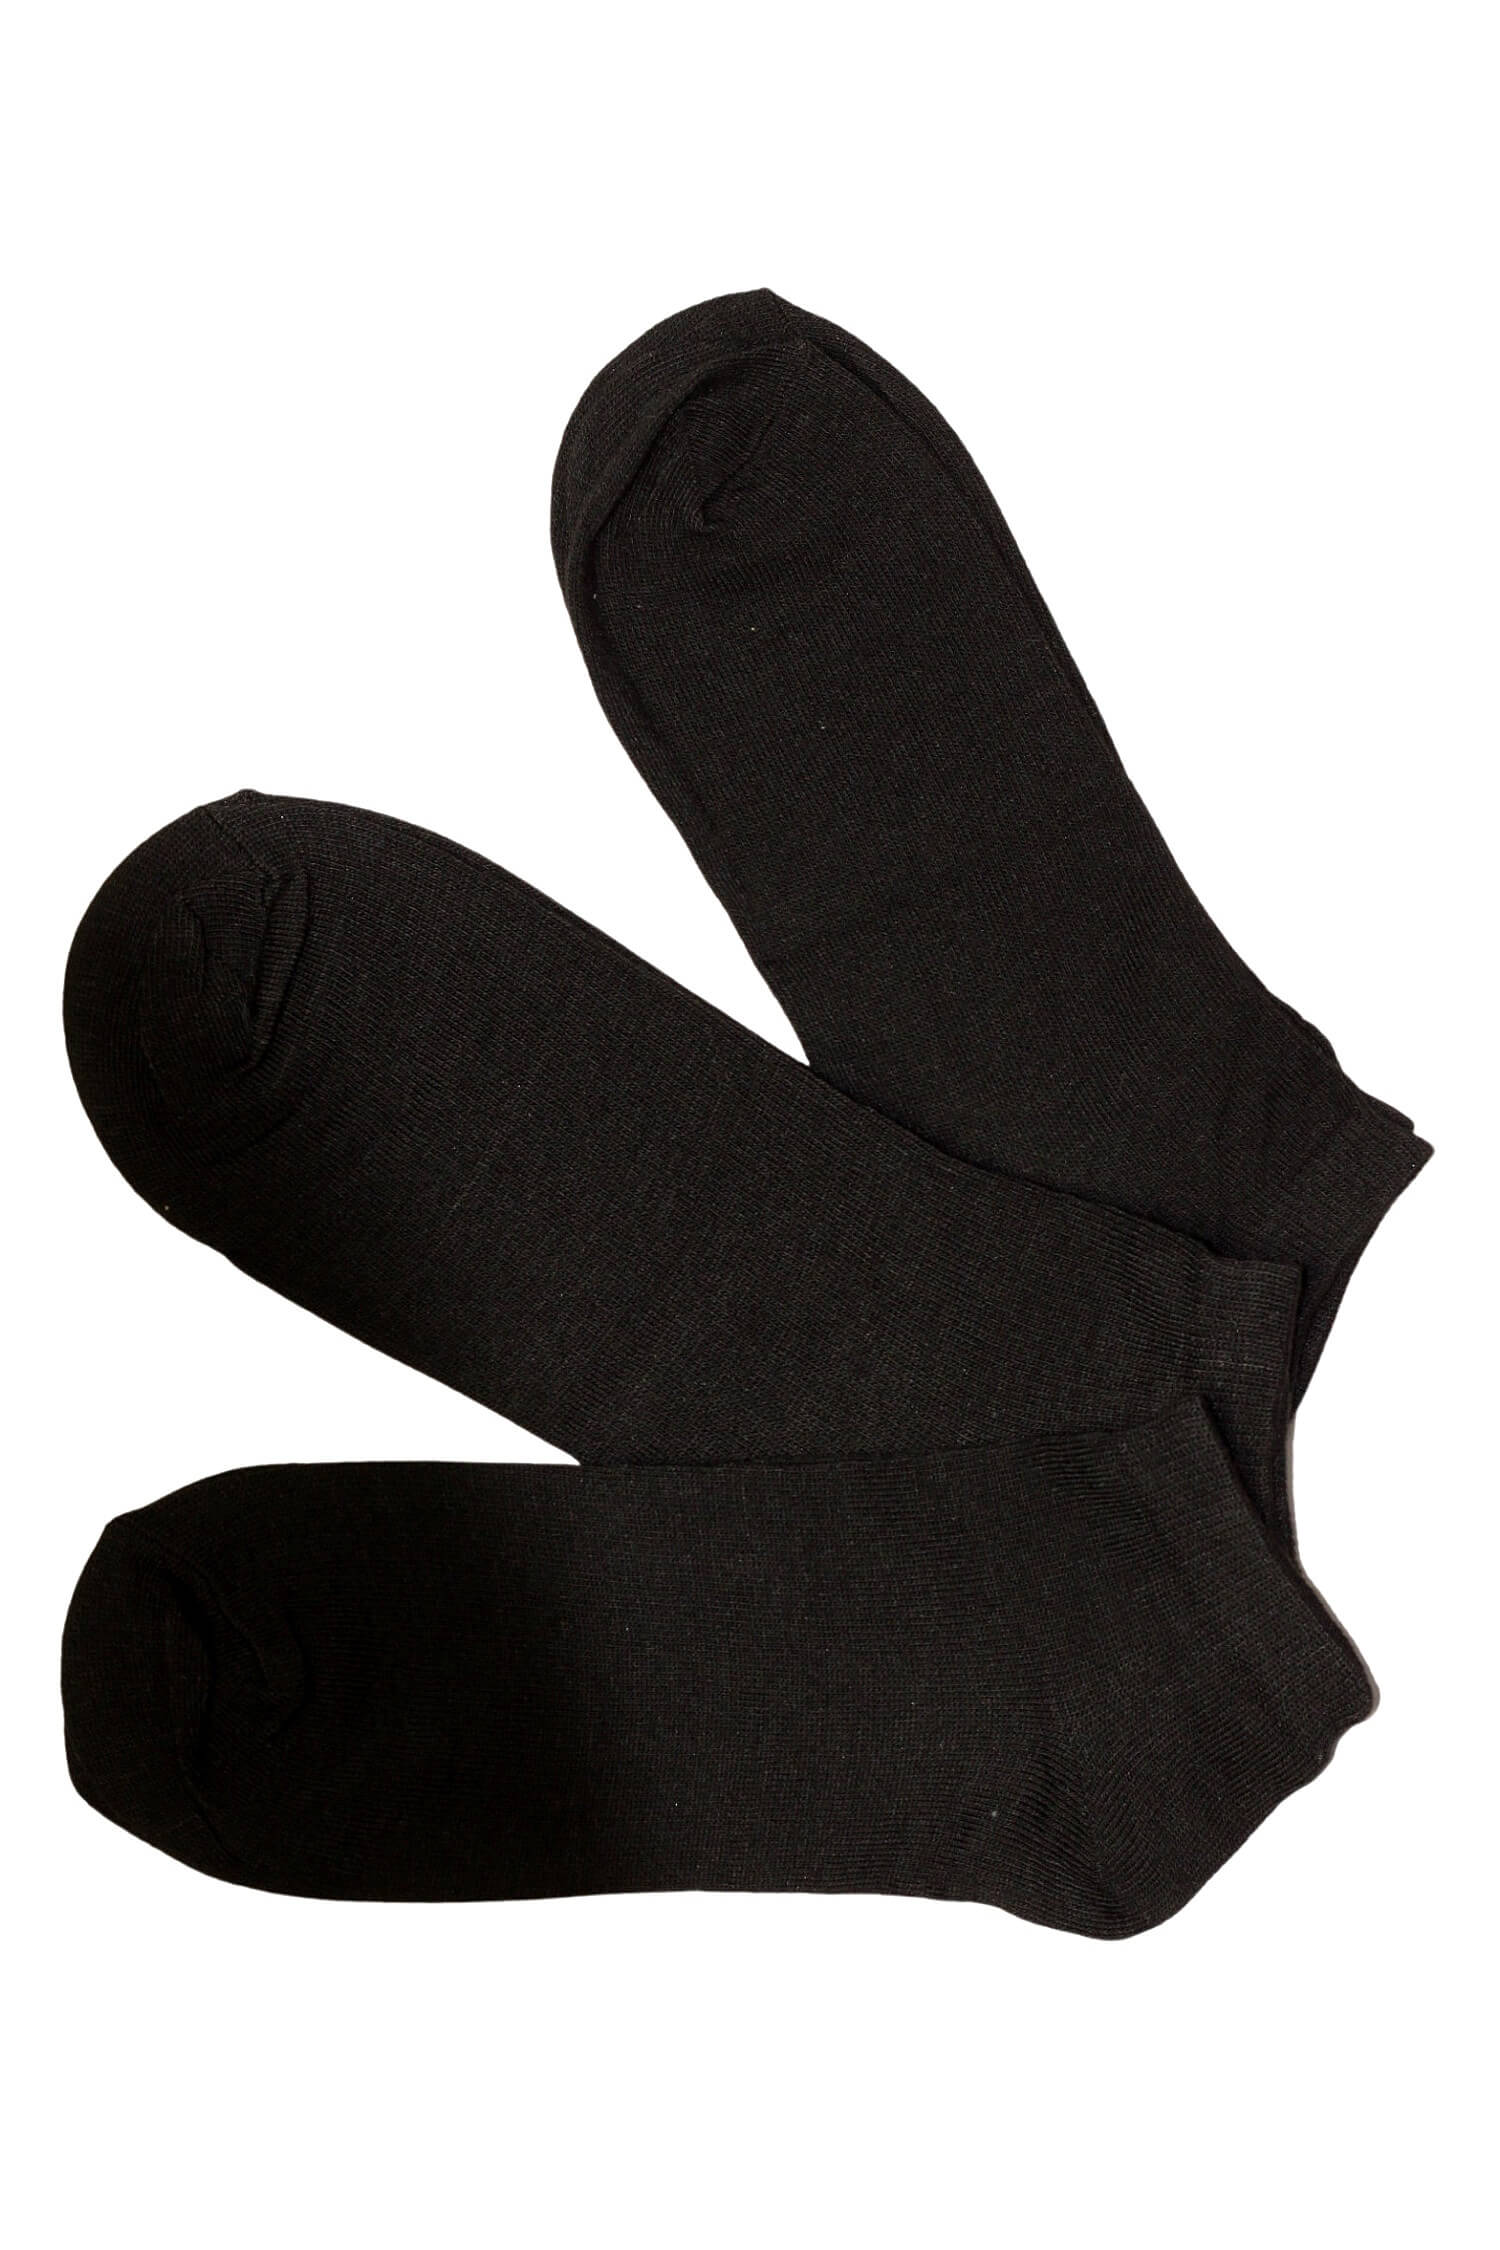 Levné kotníkové pánské ponožky z bavlny LM200C 3 páry 40-43 černá